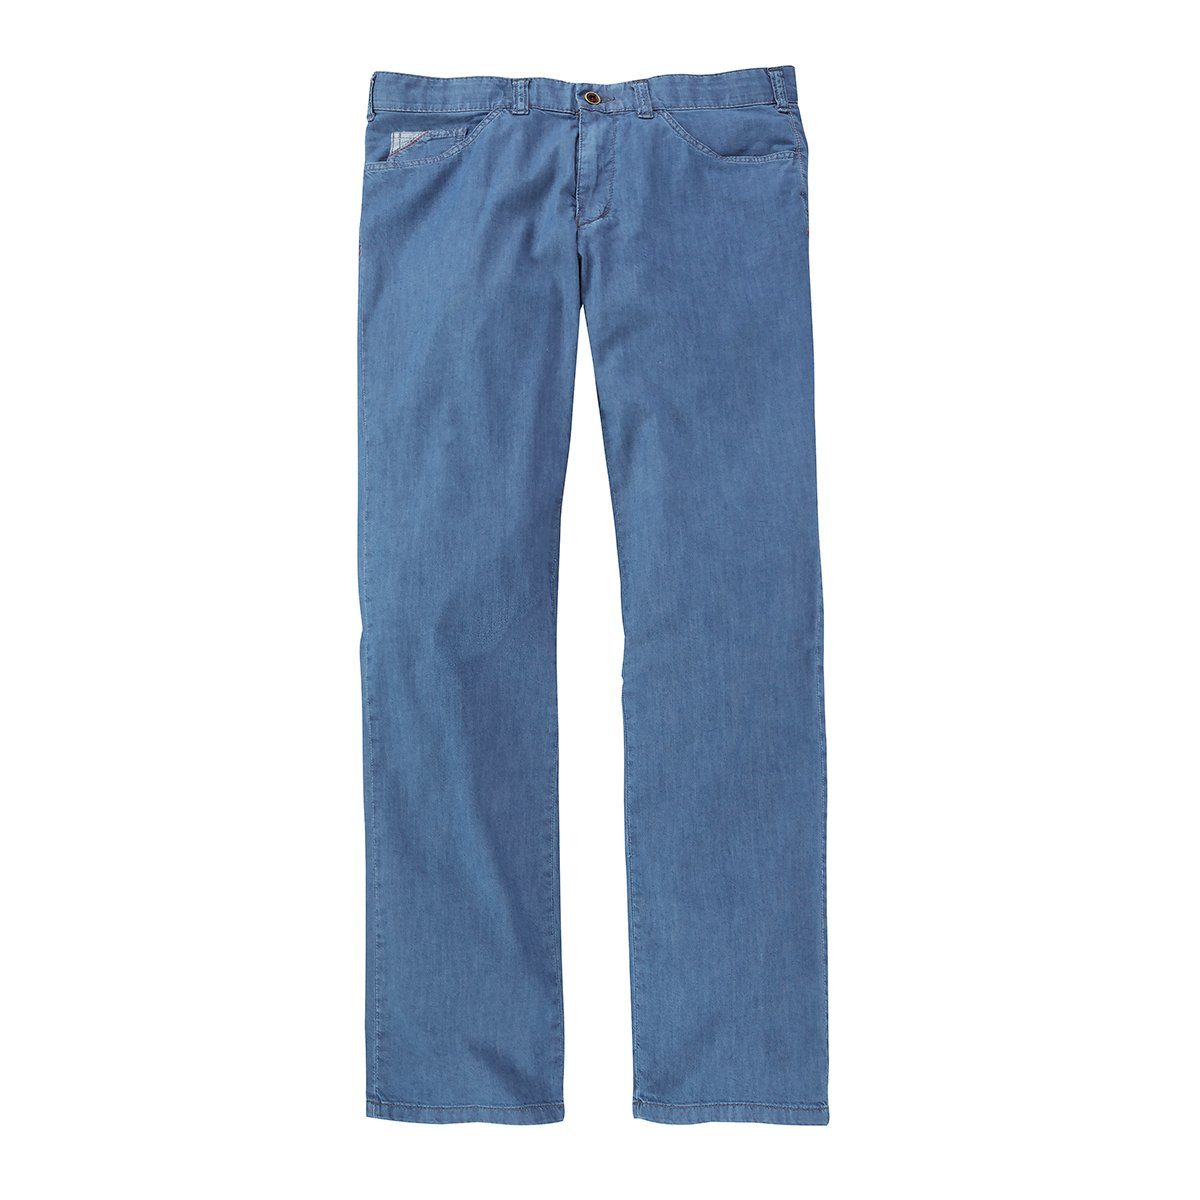 Club Jeans Club Comfort Bequeme Jeans Übergrößen hellblau of Comfort Keno of superleichte